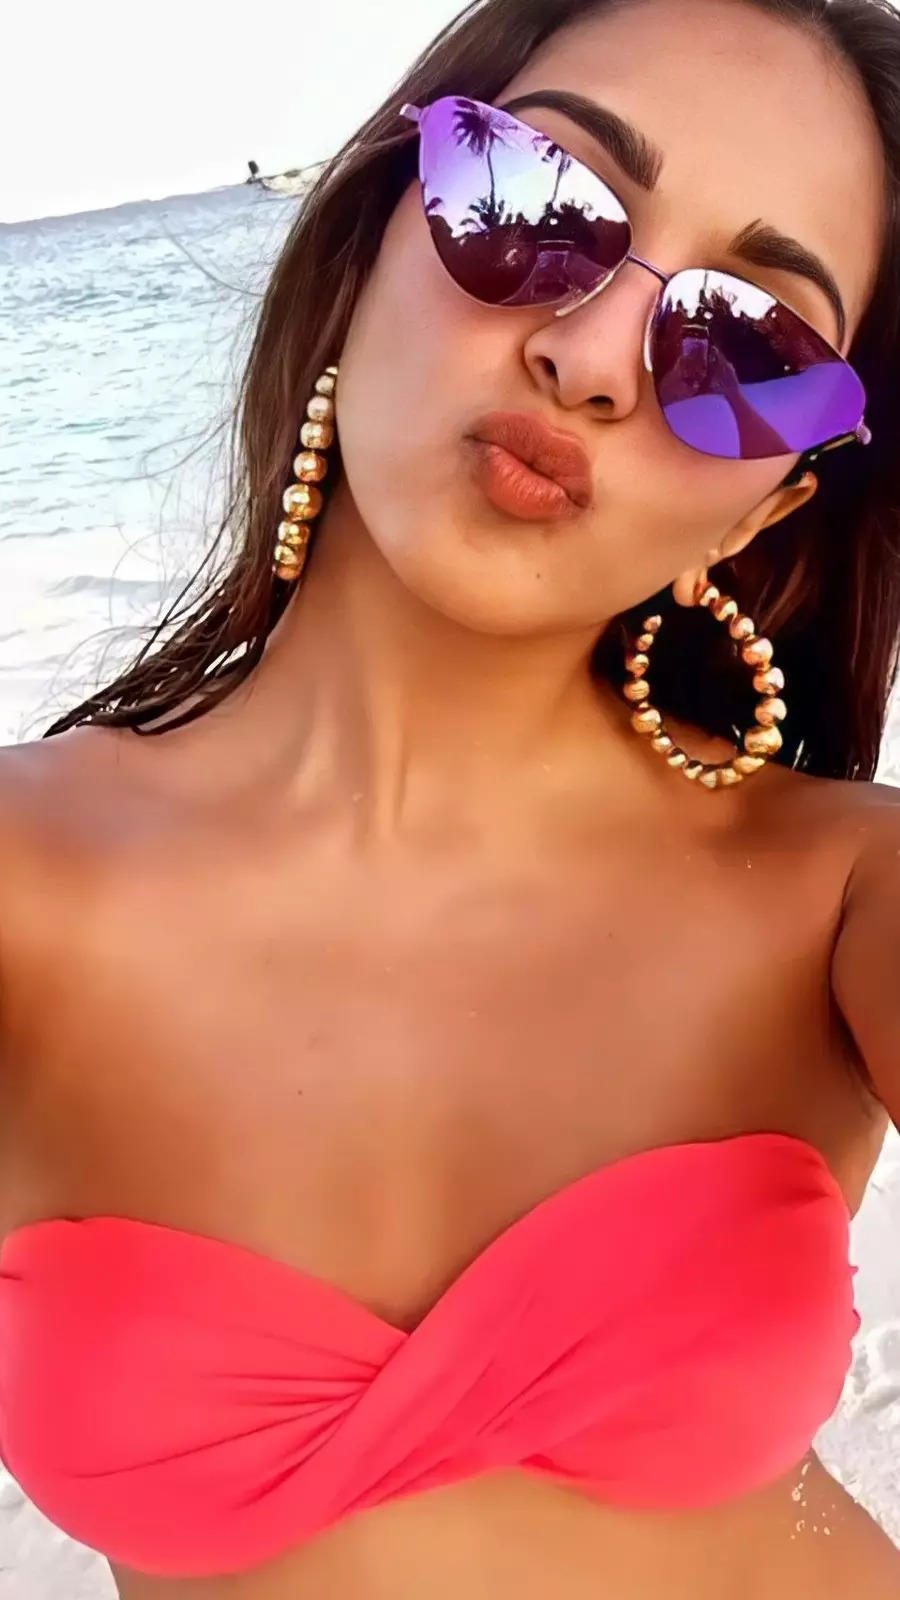  Kiara Advani  bikini